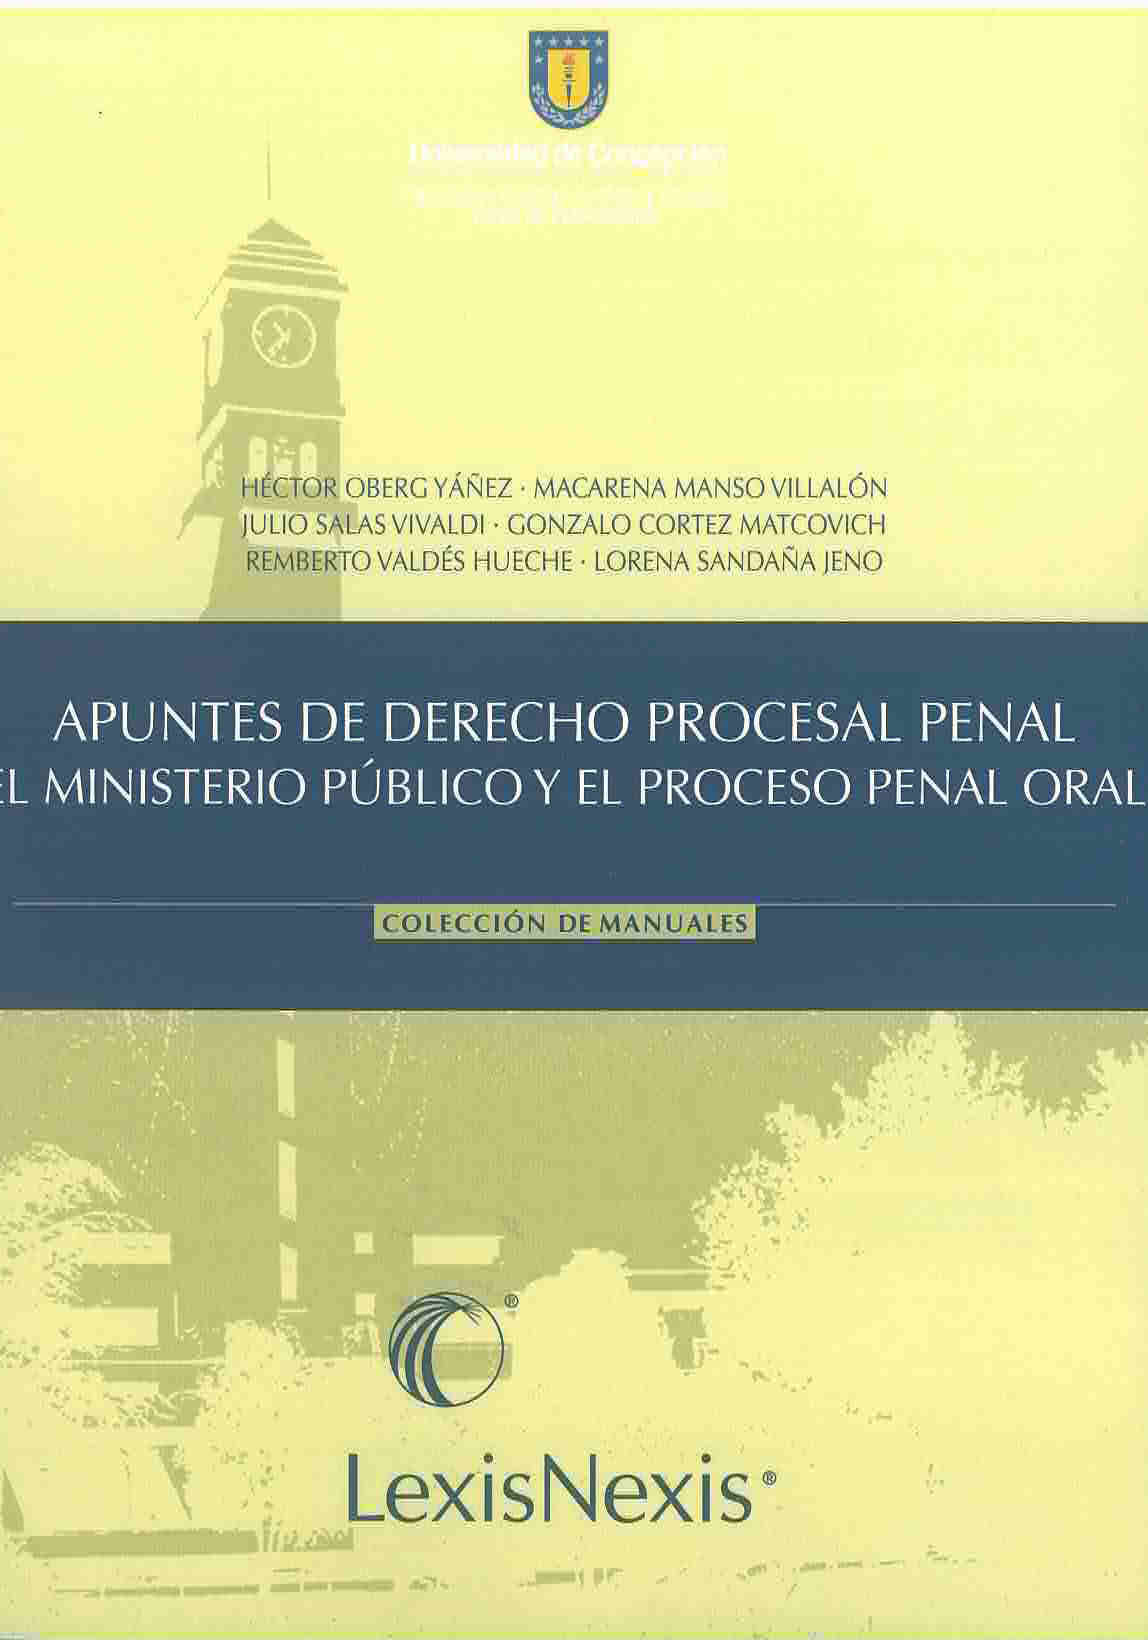 Apuntes de derecho procesal penal el ministerio público y el proceso penal oral